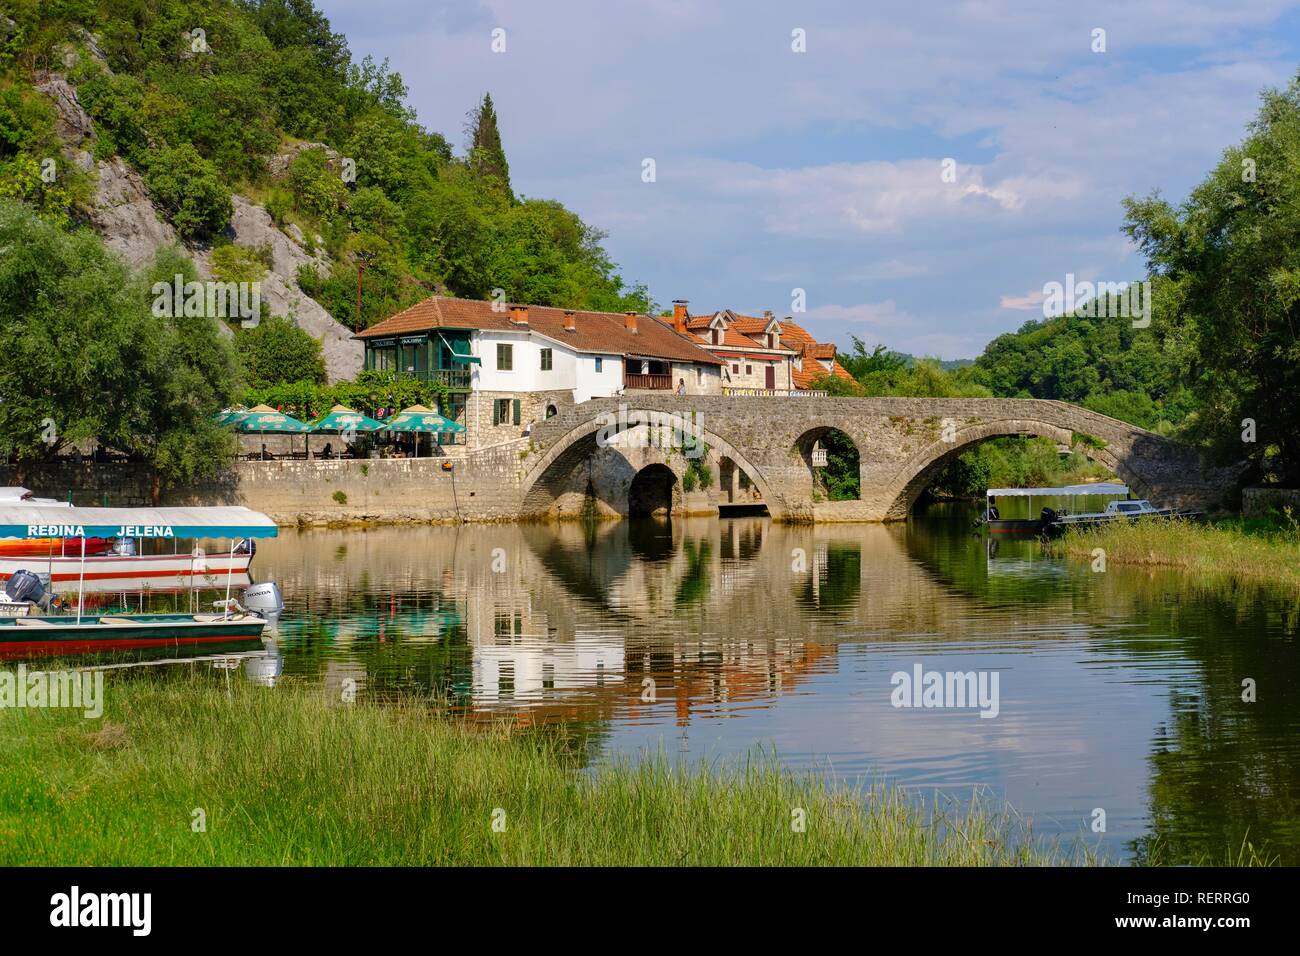 Vieux pont Stari Most, rivière, Rijeka Crnojevica Crnojevic parc national, le lac de Skadar, près de Cetinje, Monténégro Banque D'Images